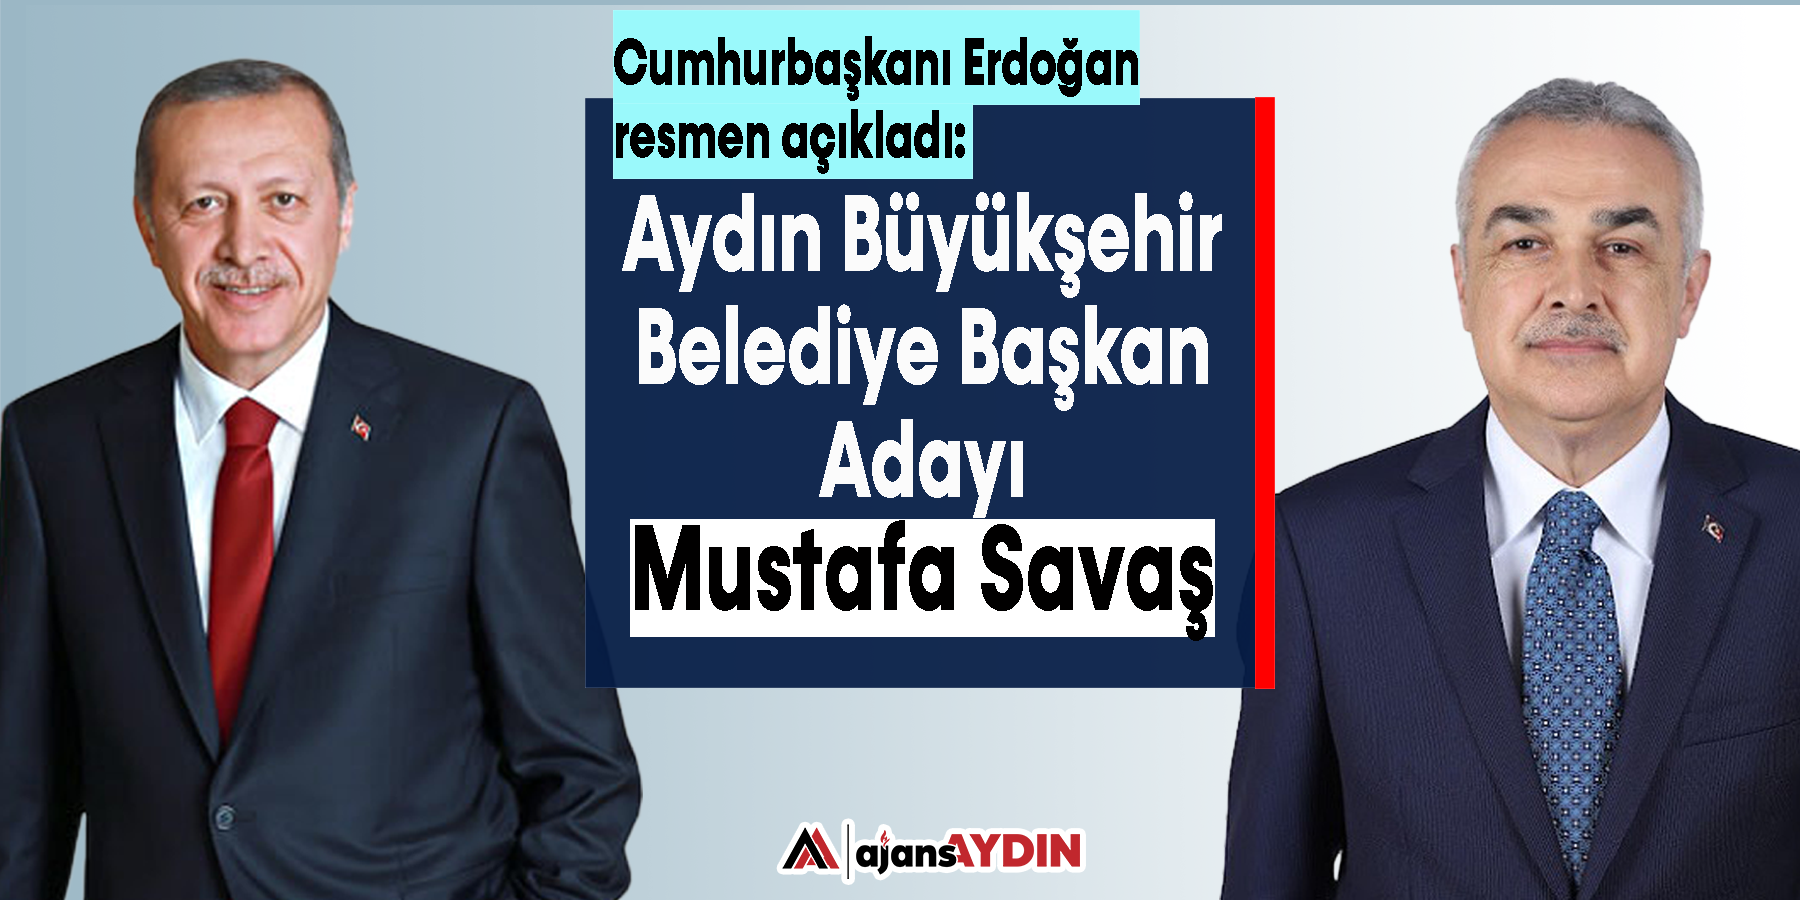 Cumhurbaşkanı Erdoğan resmen açıkladı: "Mustaf Savaş aday"